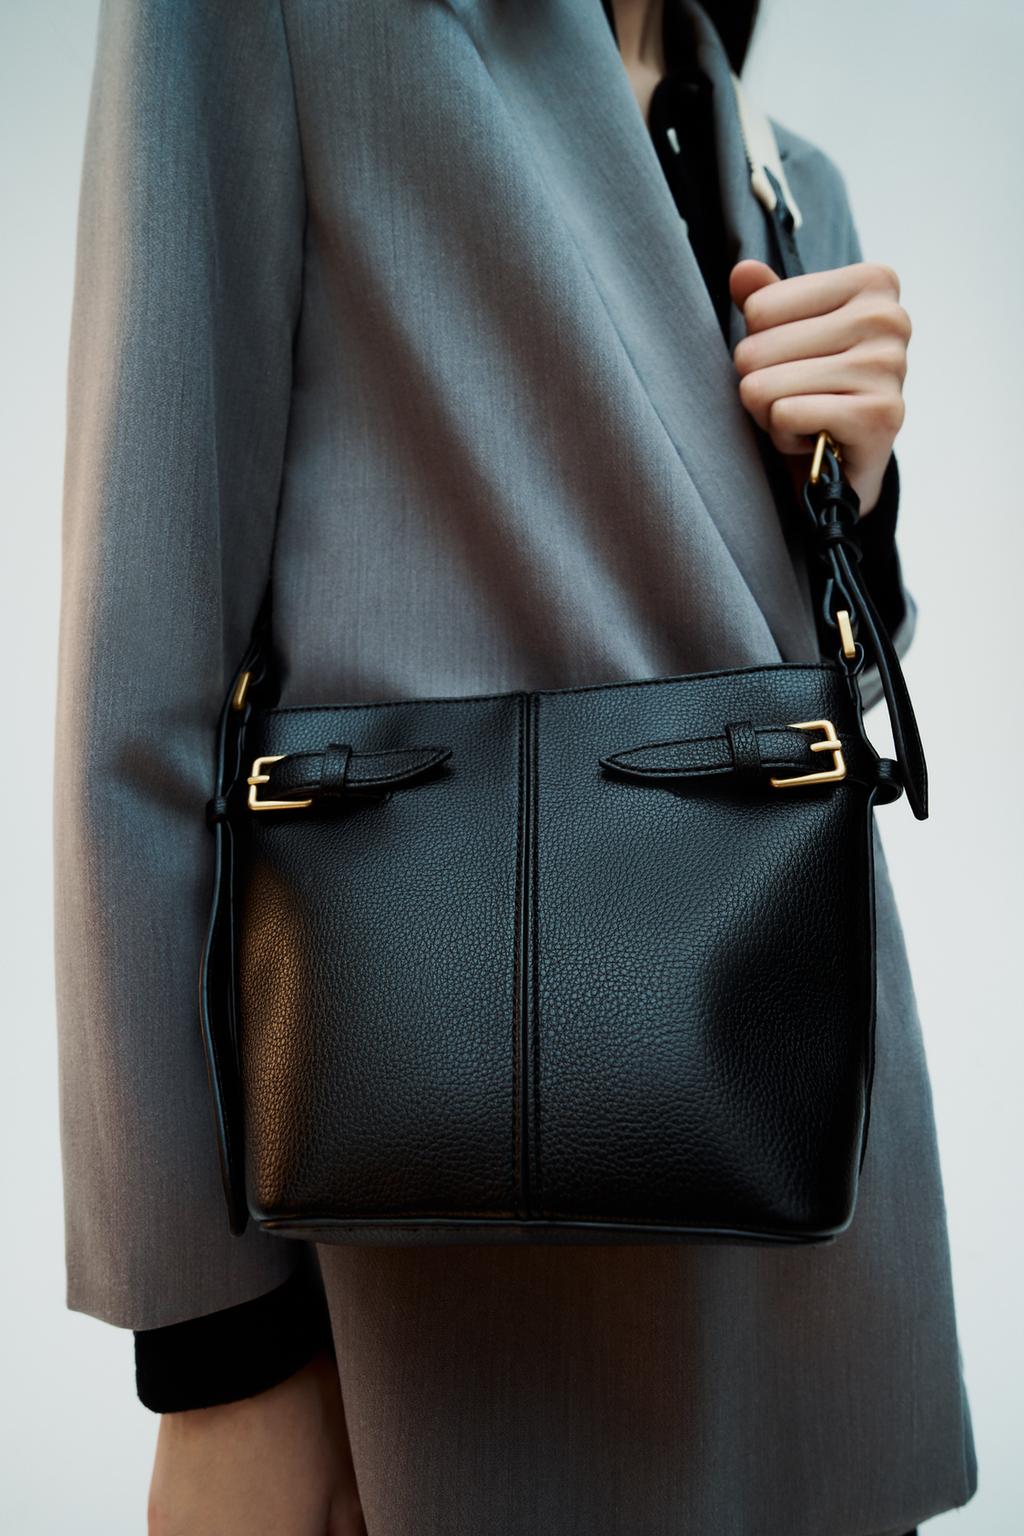 Сумка Zara Bucket With Buckles, черный широкая сумка через плечо сменный ремешок для кошелька цепочка для женской сумки ручная сумка аксессуары регулируемый ремень для сумок